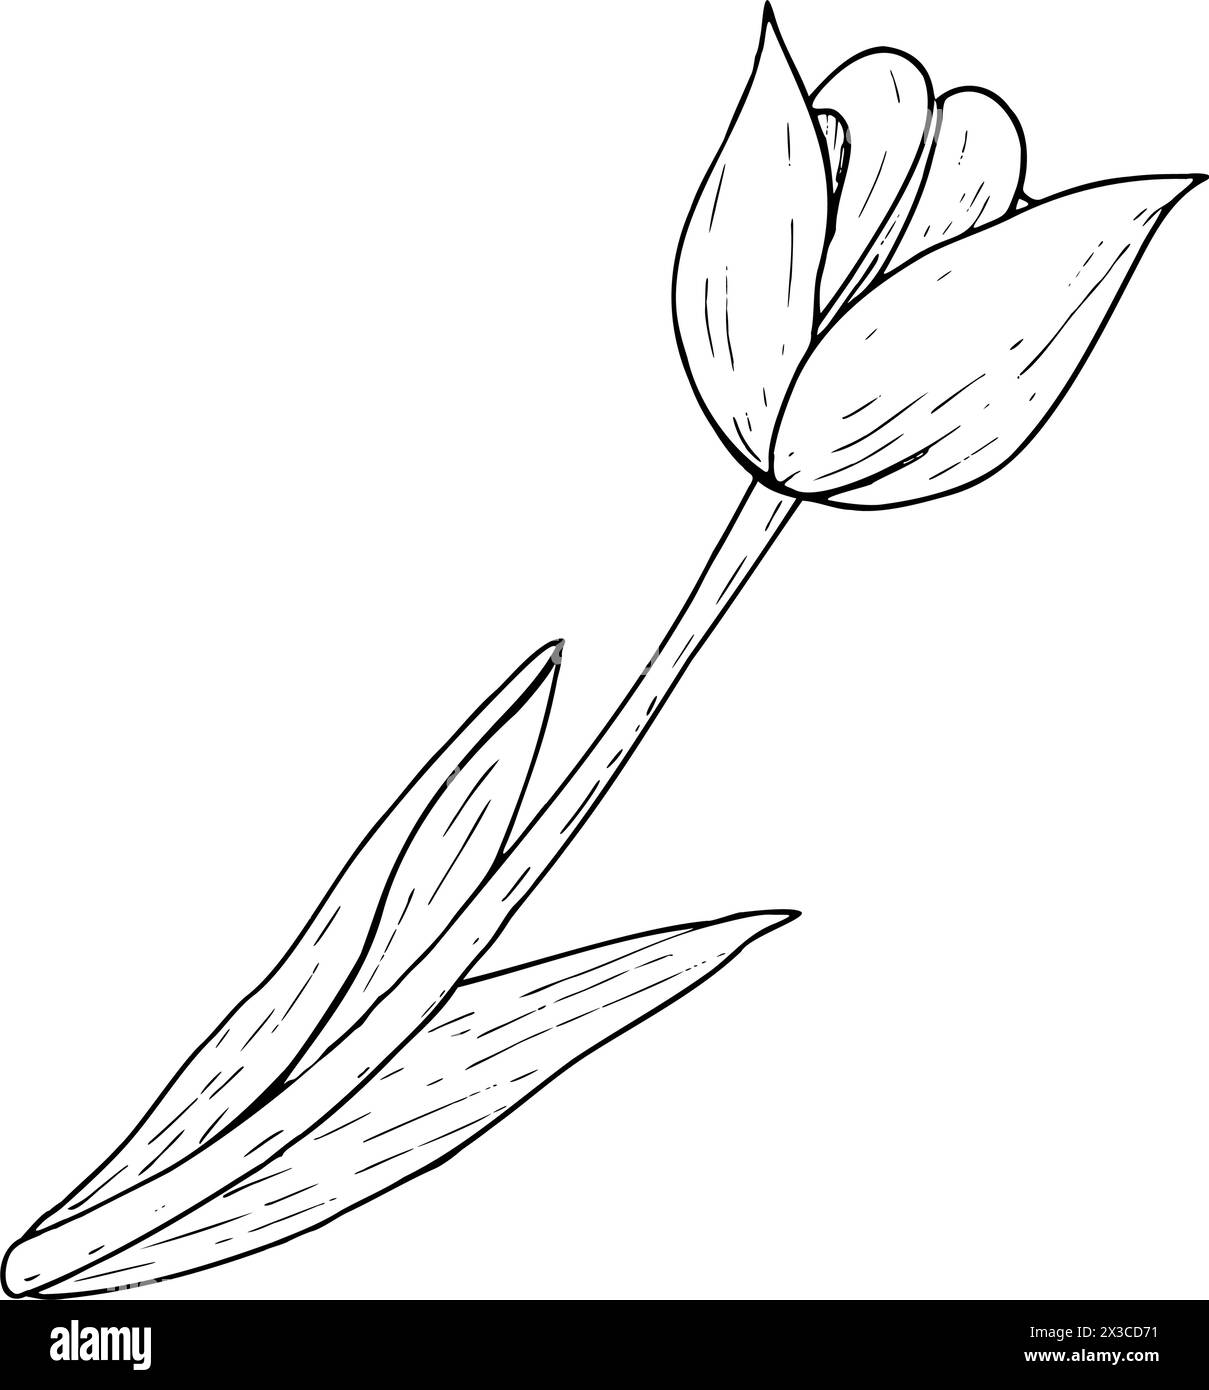 Illustration vectorielle de fleurs de tulipe. Dessin graphique de tête d'ampoule à feuilles courbes avec contour noir. Carte de voeux en fleurs botaniques. Silhouette de contour de ligne d'encre Illustration de Vecteur